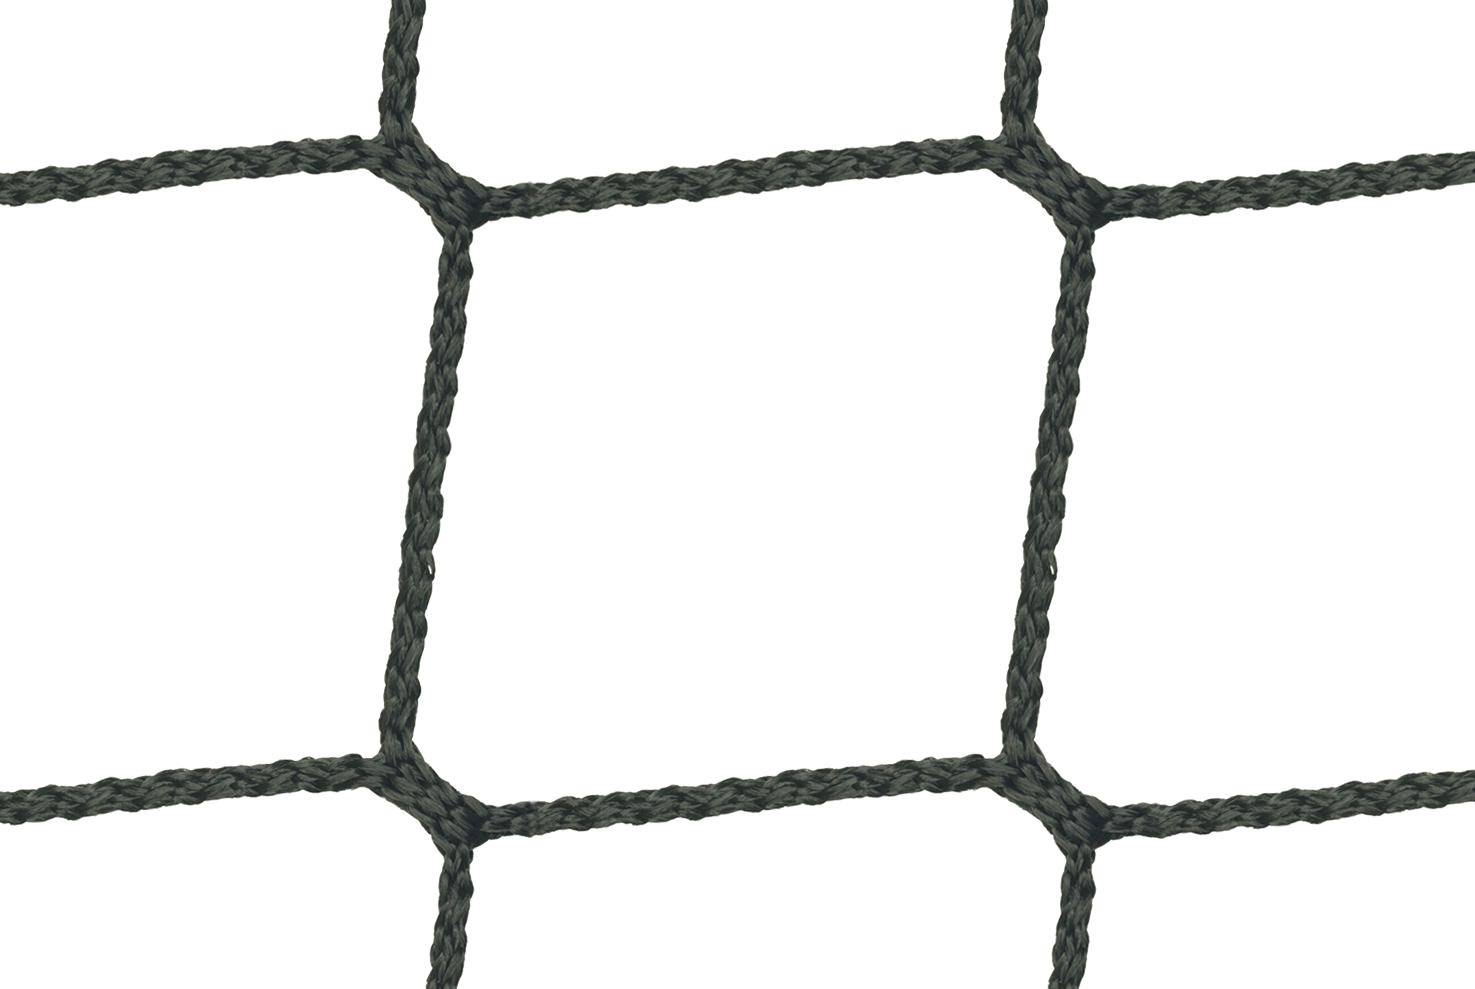 Meterware Gerüstnetz in 2,6m Breite Schutzabdeckung Schutznetz für Gerüst